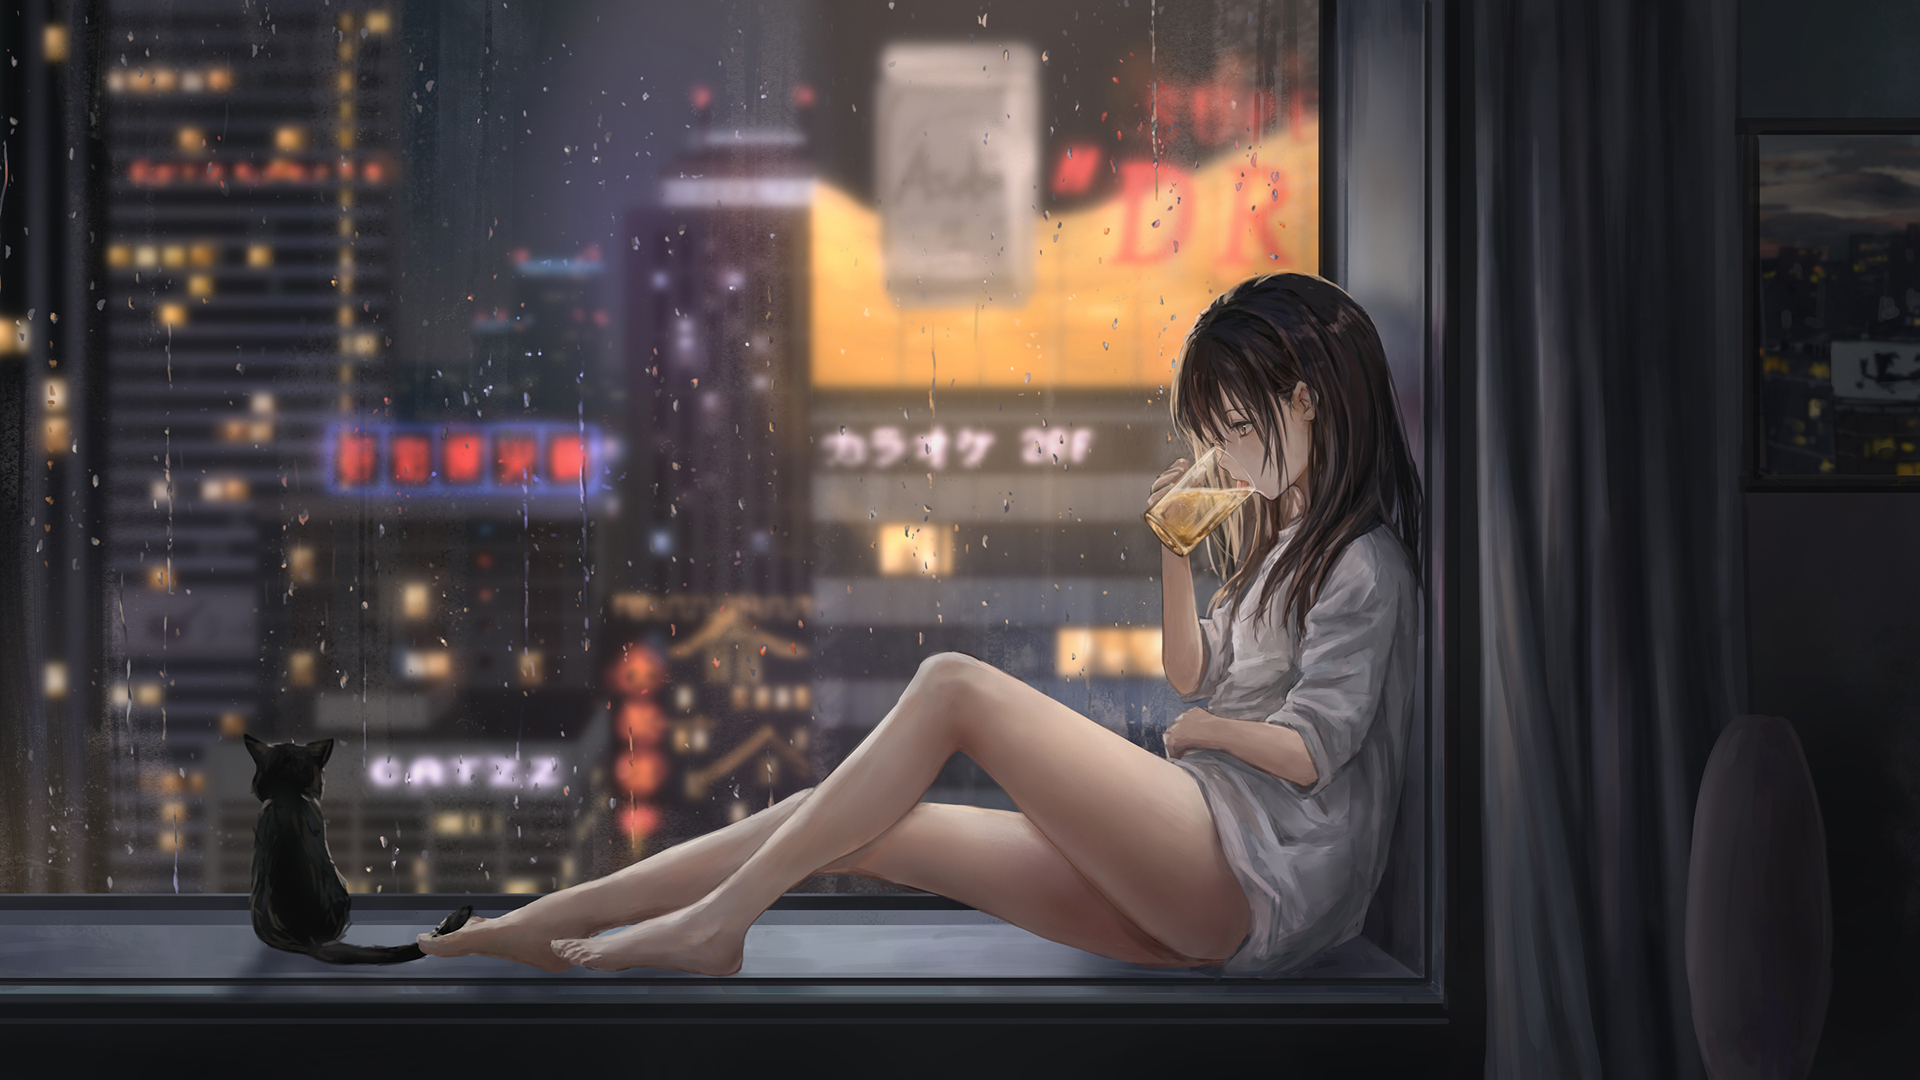 女孩子 啤酒 飘窗 夜景 都市风景 雨 猫 动漫壁纸